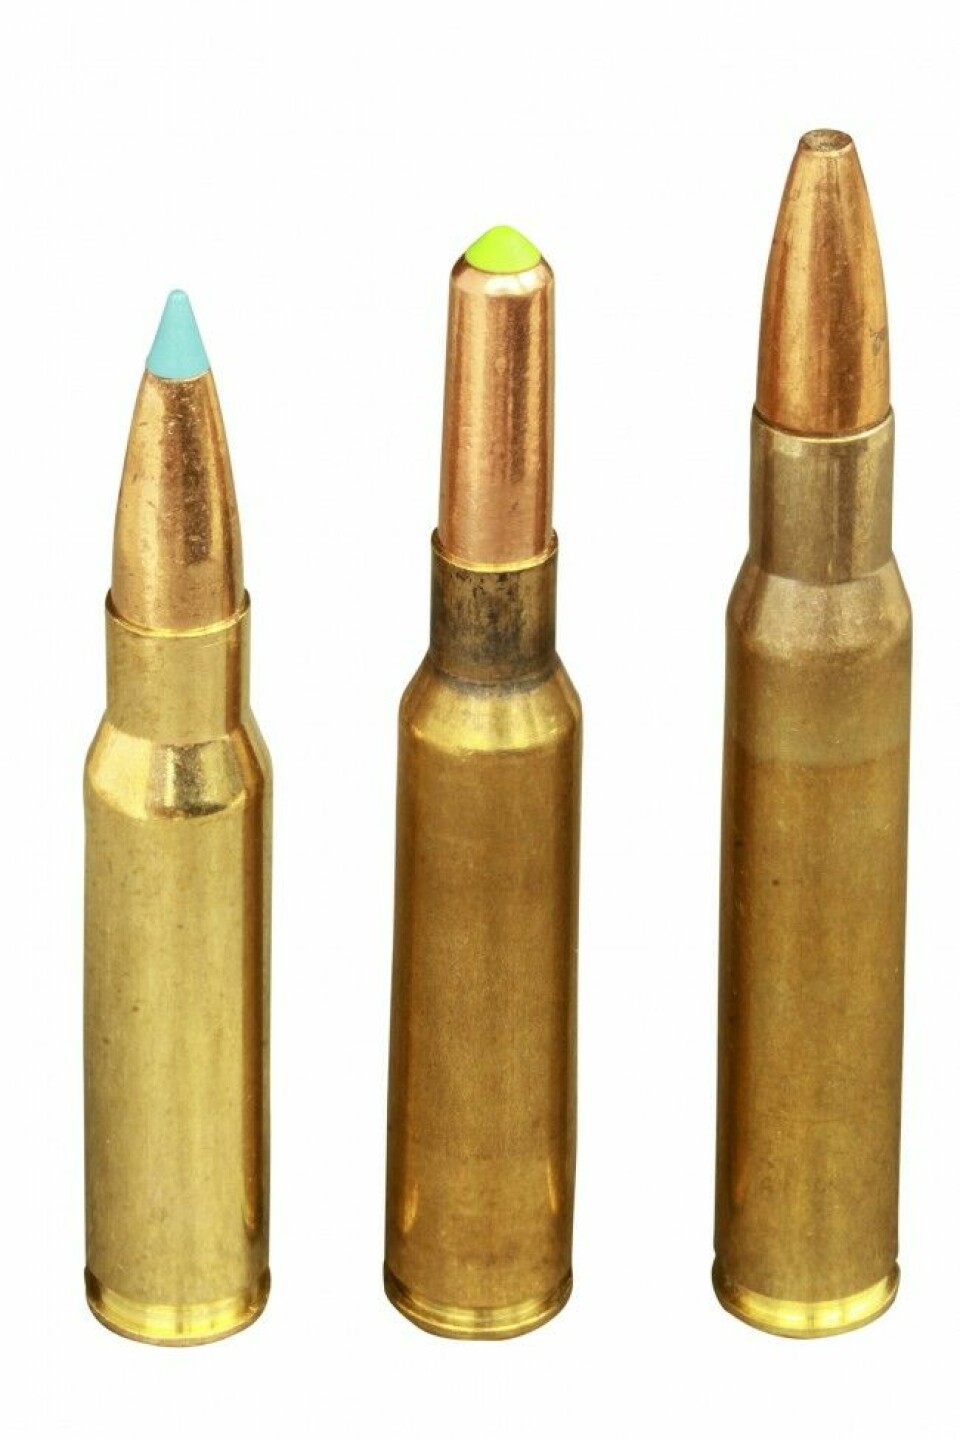 Våre vanligste storviltpatroner er .308 Winchester, 6,5x55mm og .30-06, som er navnsatt etter tre forskjellige prinsipper.